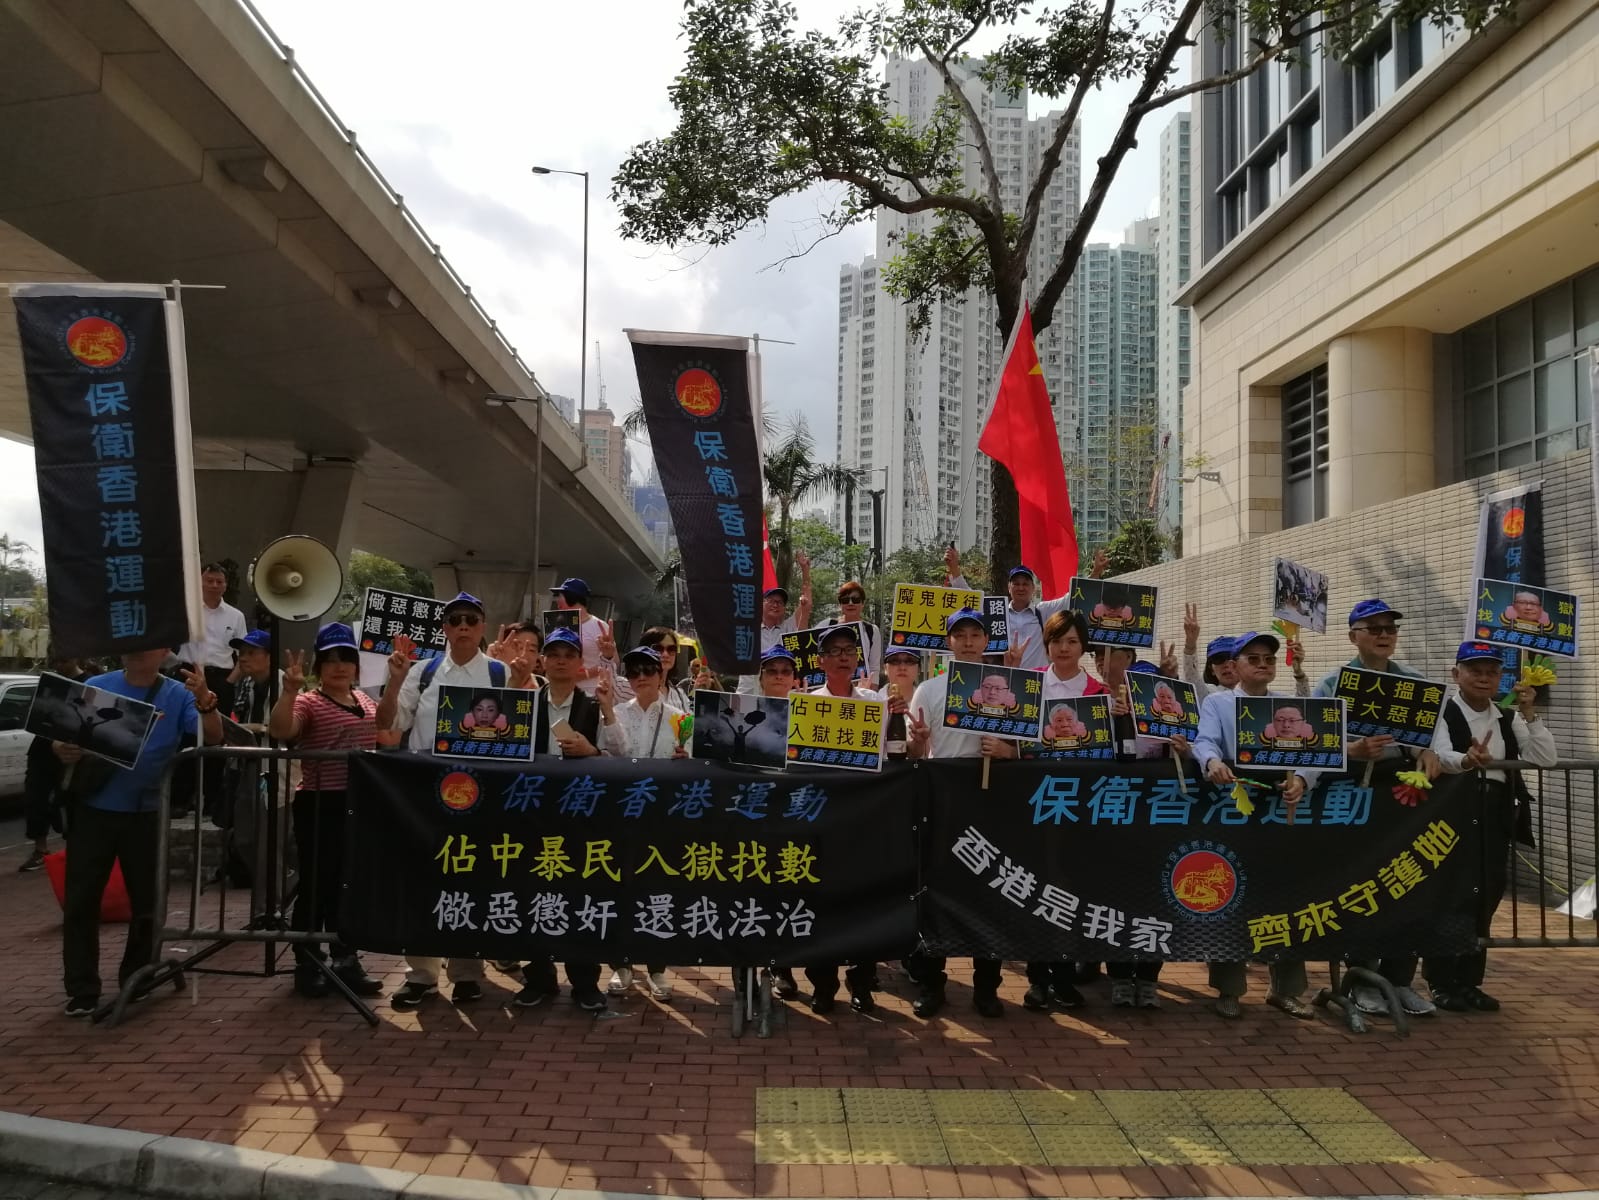 保衛香港運動 主辦「佔中暴民 入獄找數」集會